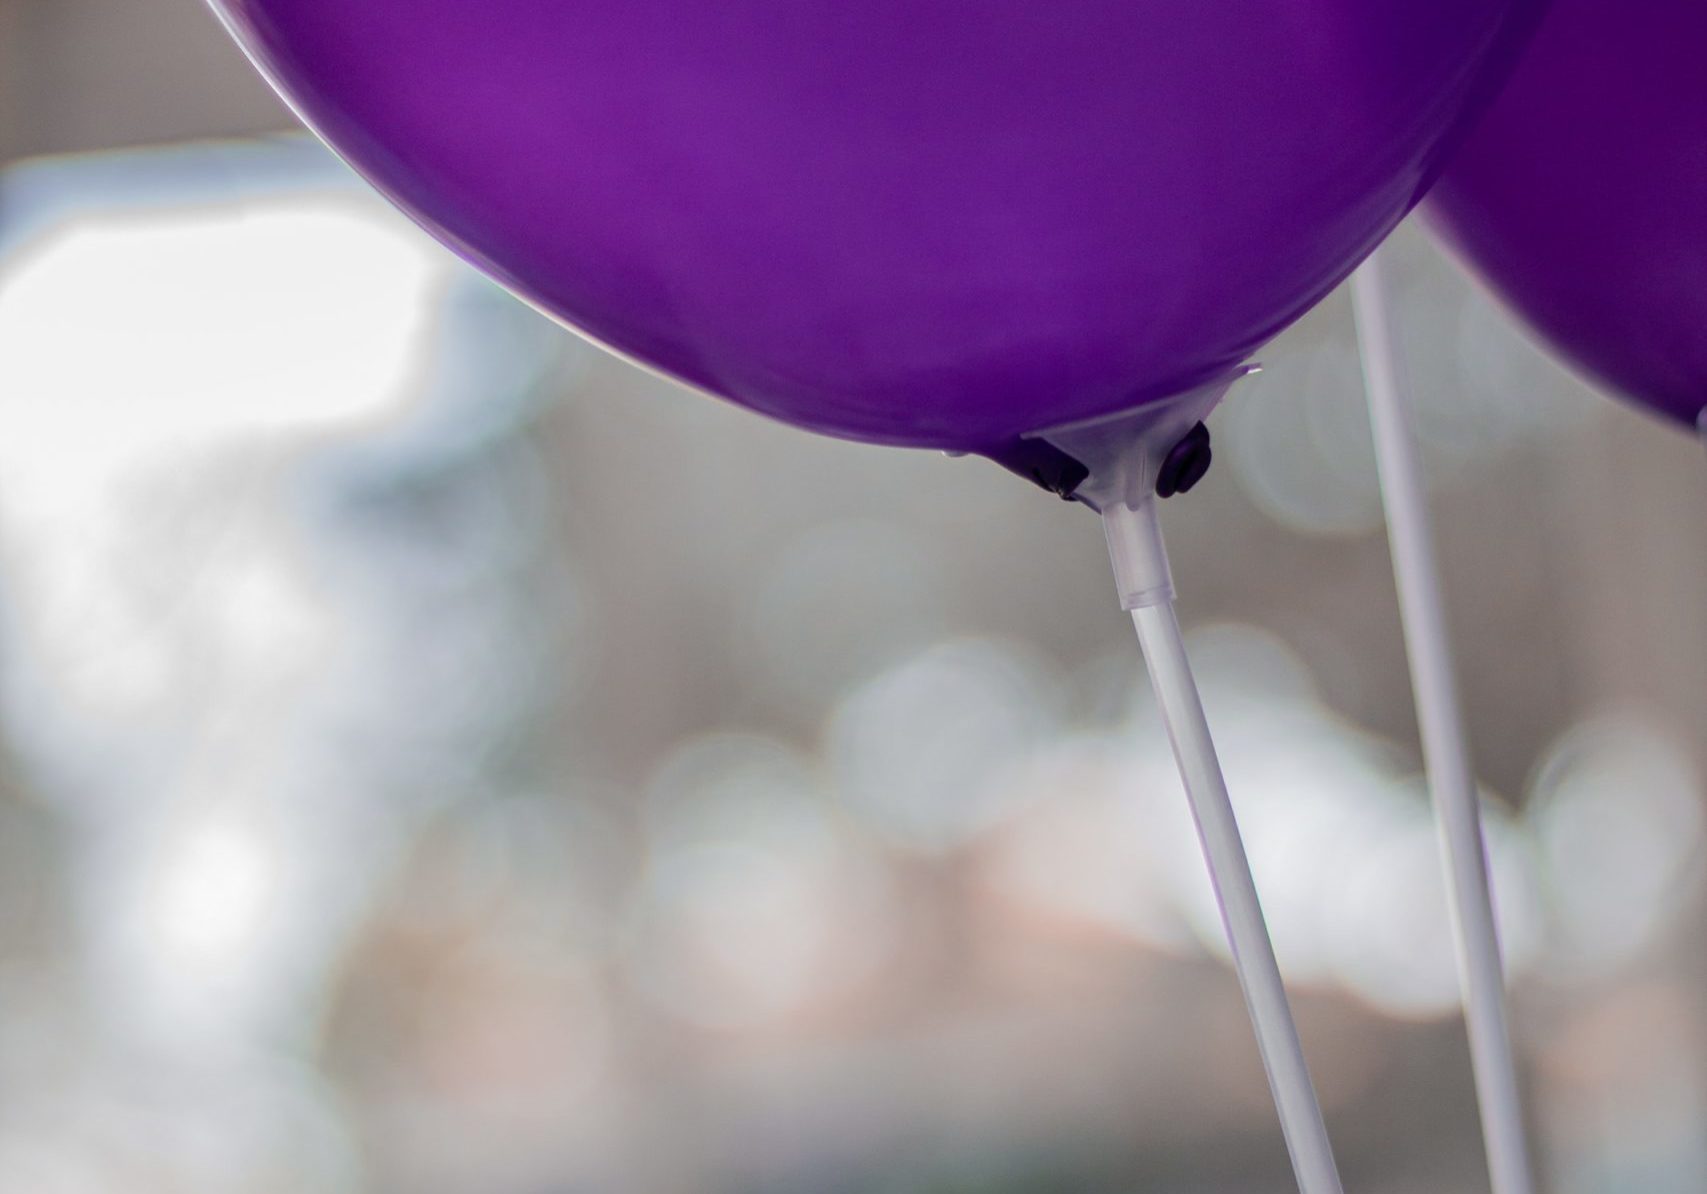 Purple balloons photo by Ezequiel Garrido on Unsplash